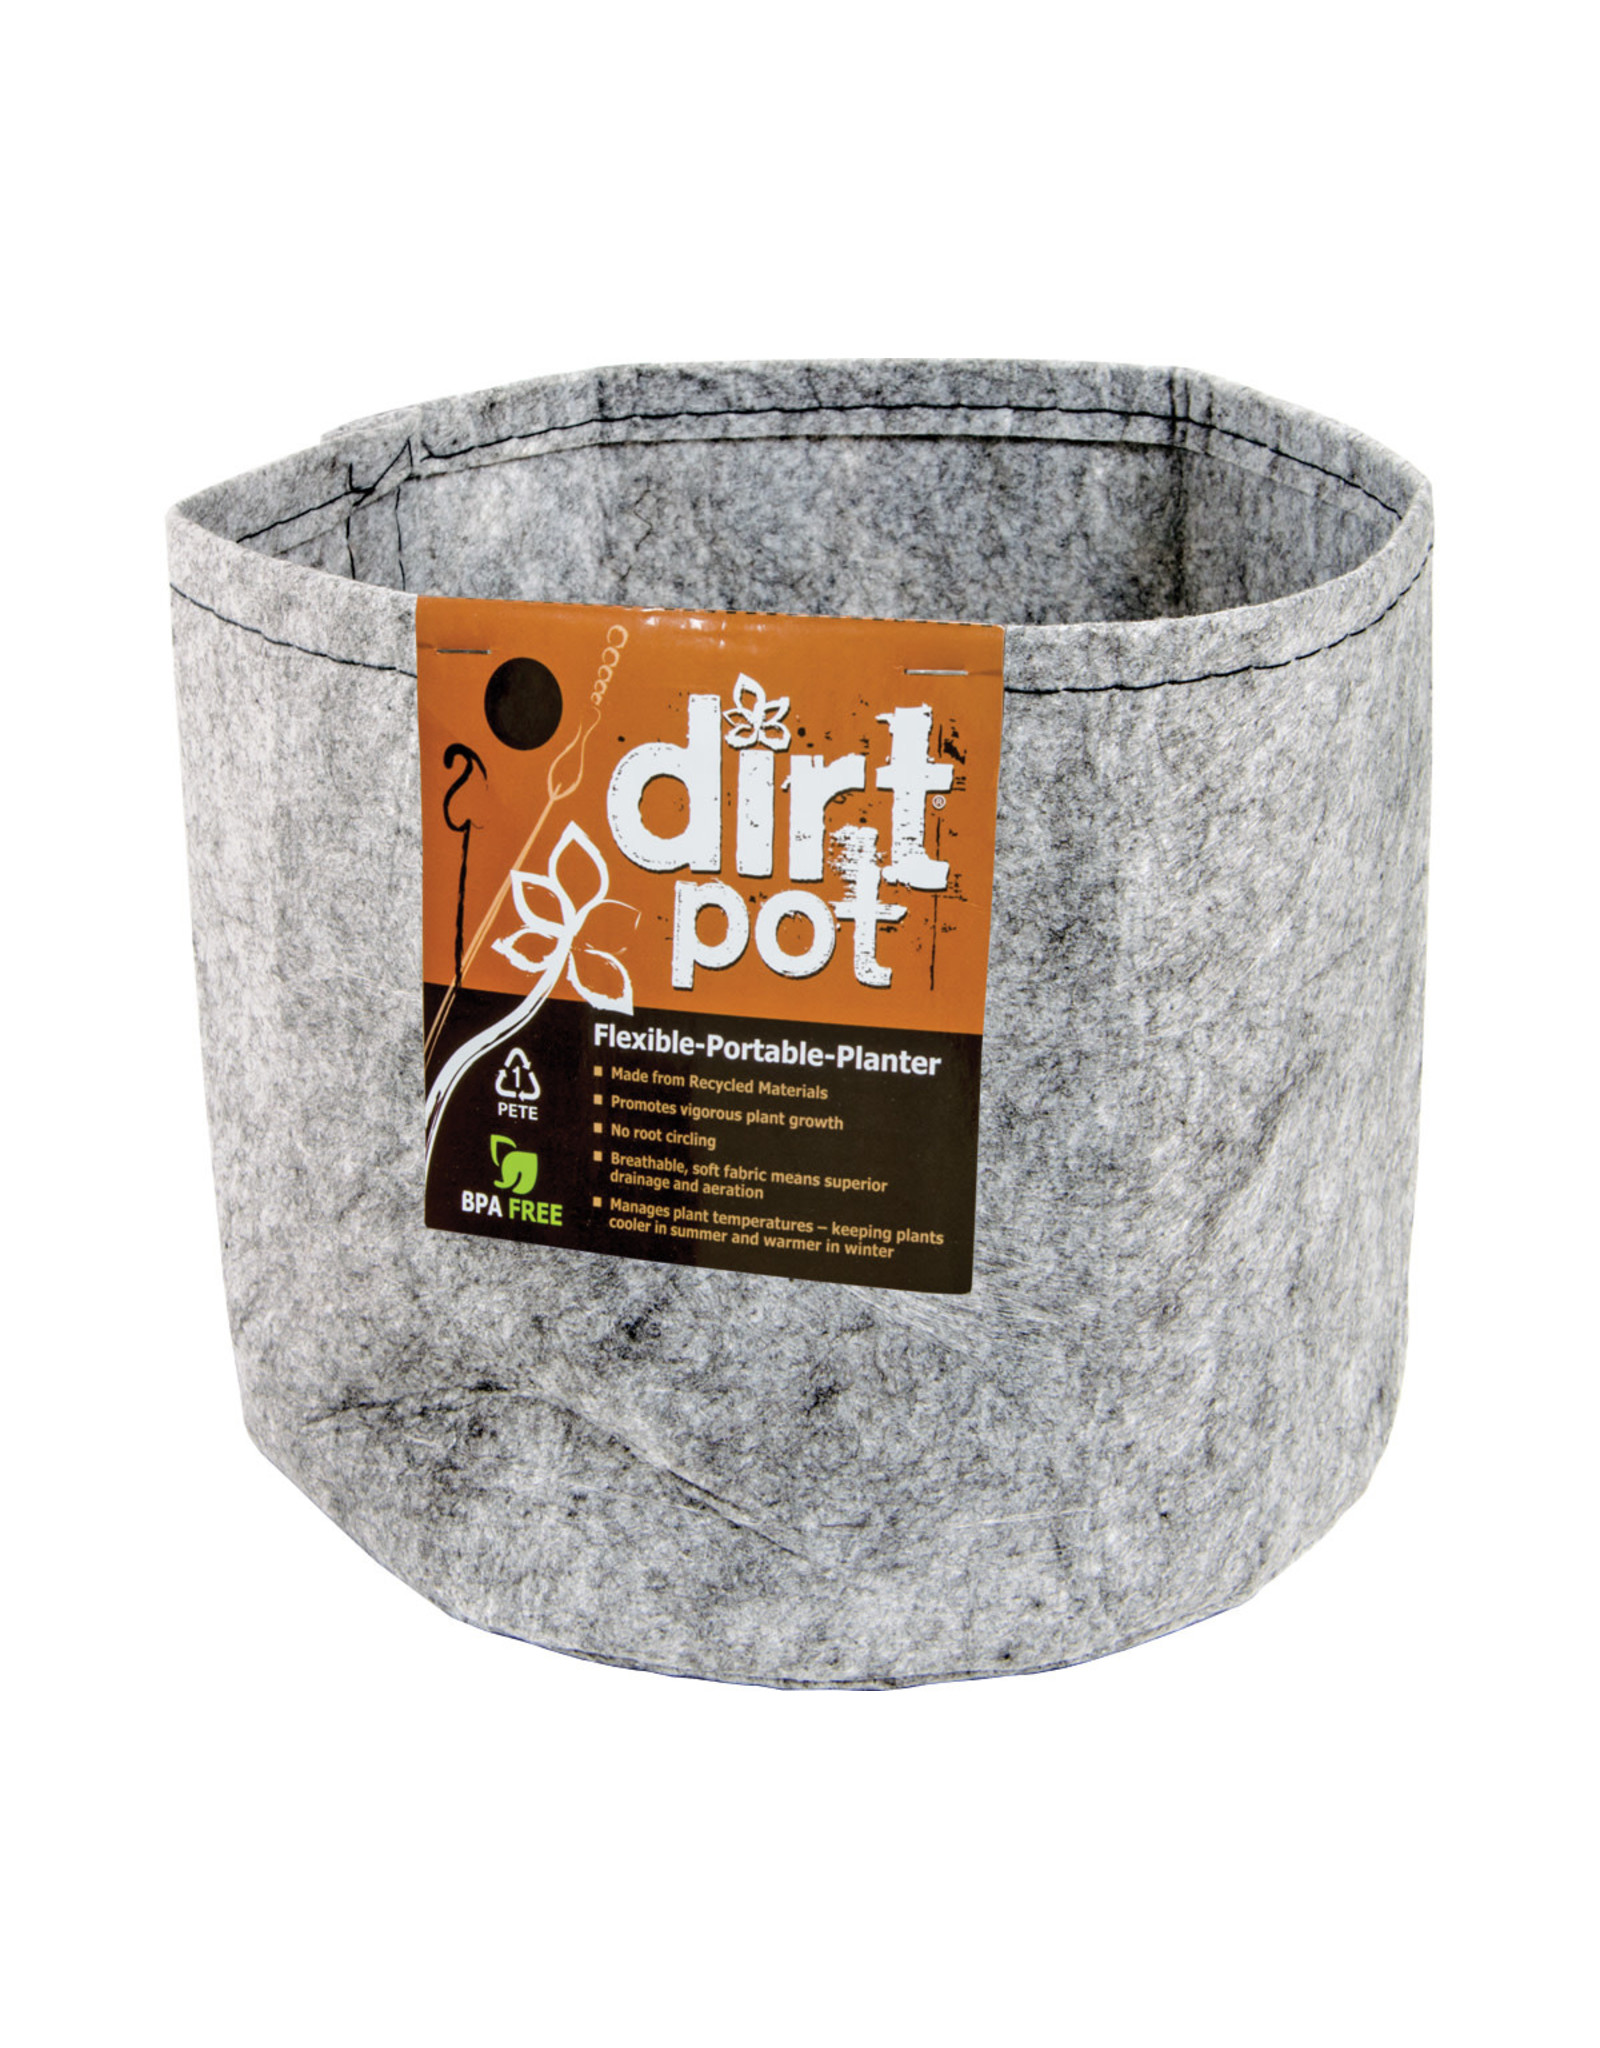 Dirt Pot Dirt Pot Flexible Portable Planter, Grey, 5 gal, no handles